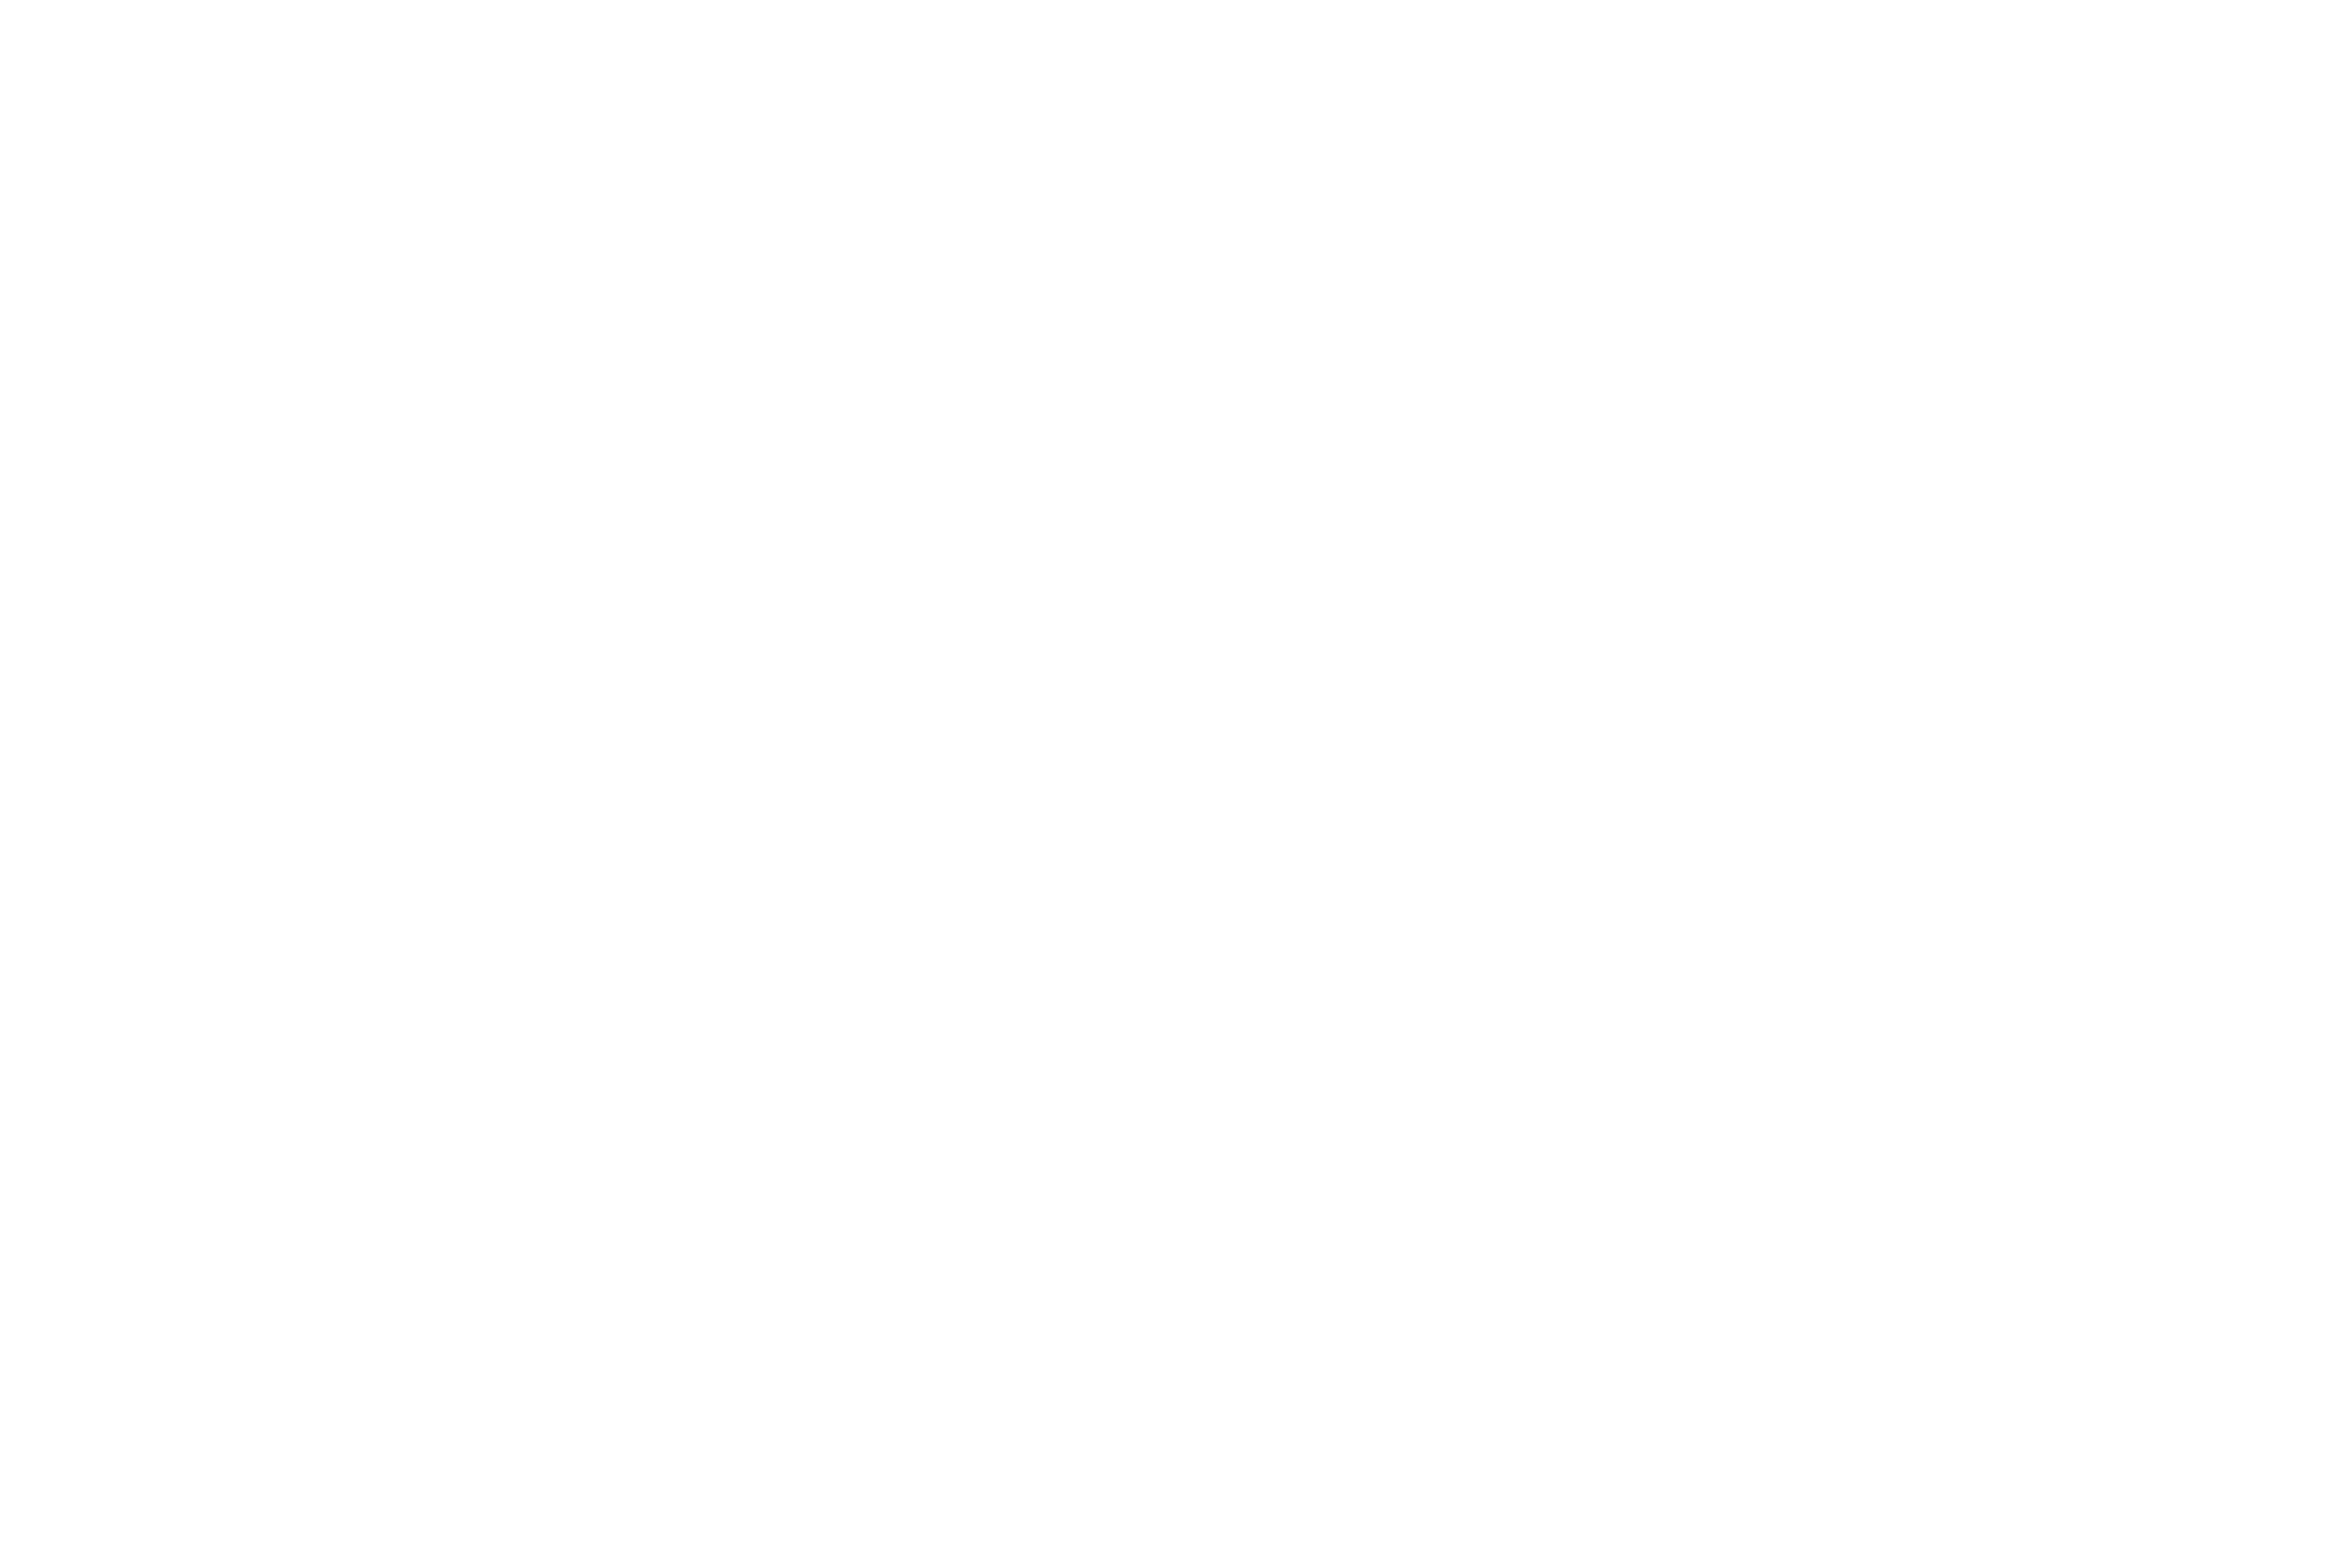 Bill Wagner Realtor Custom Image